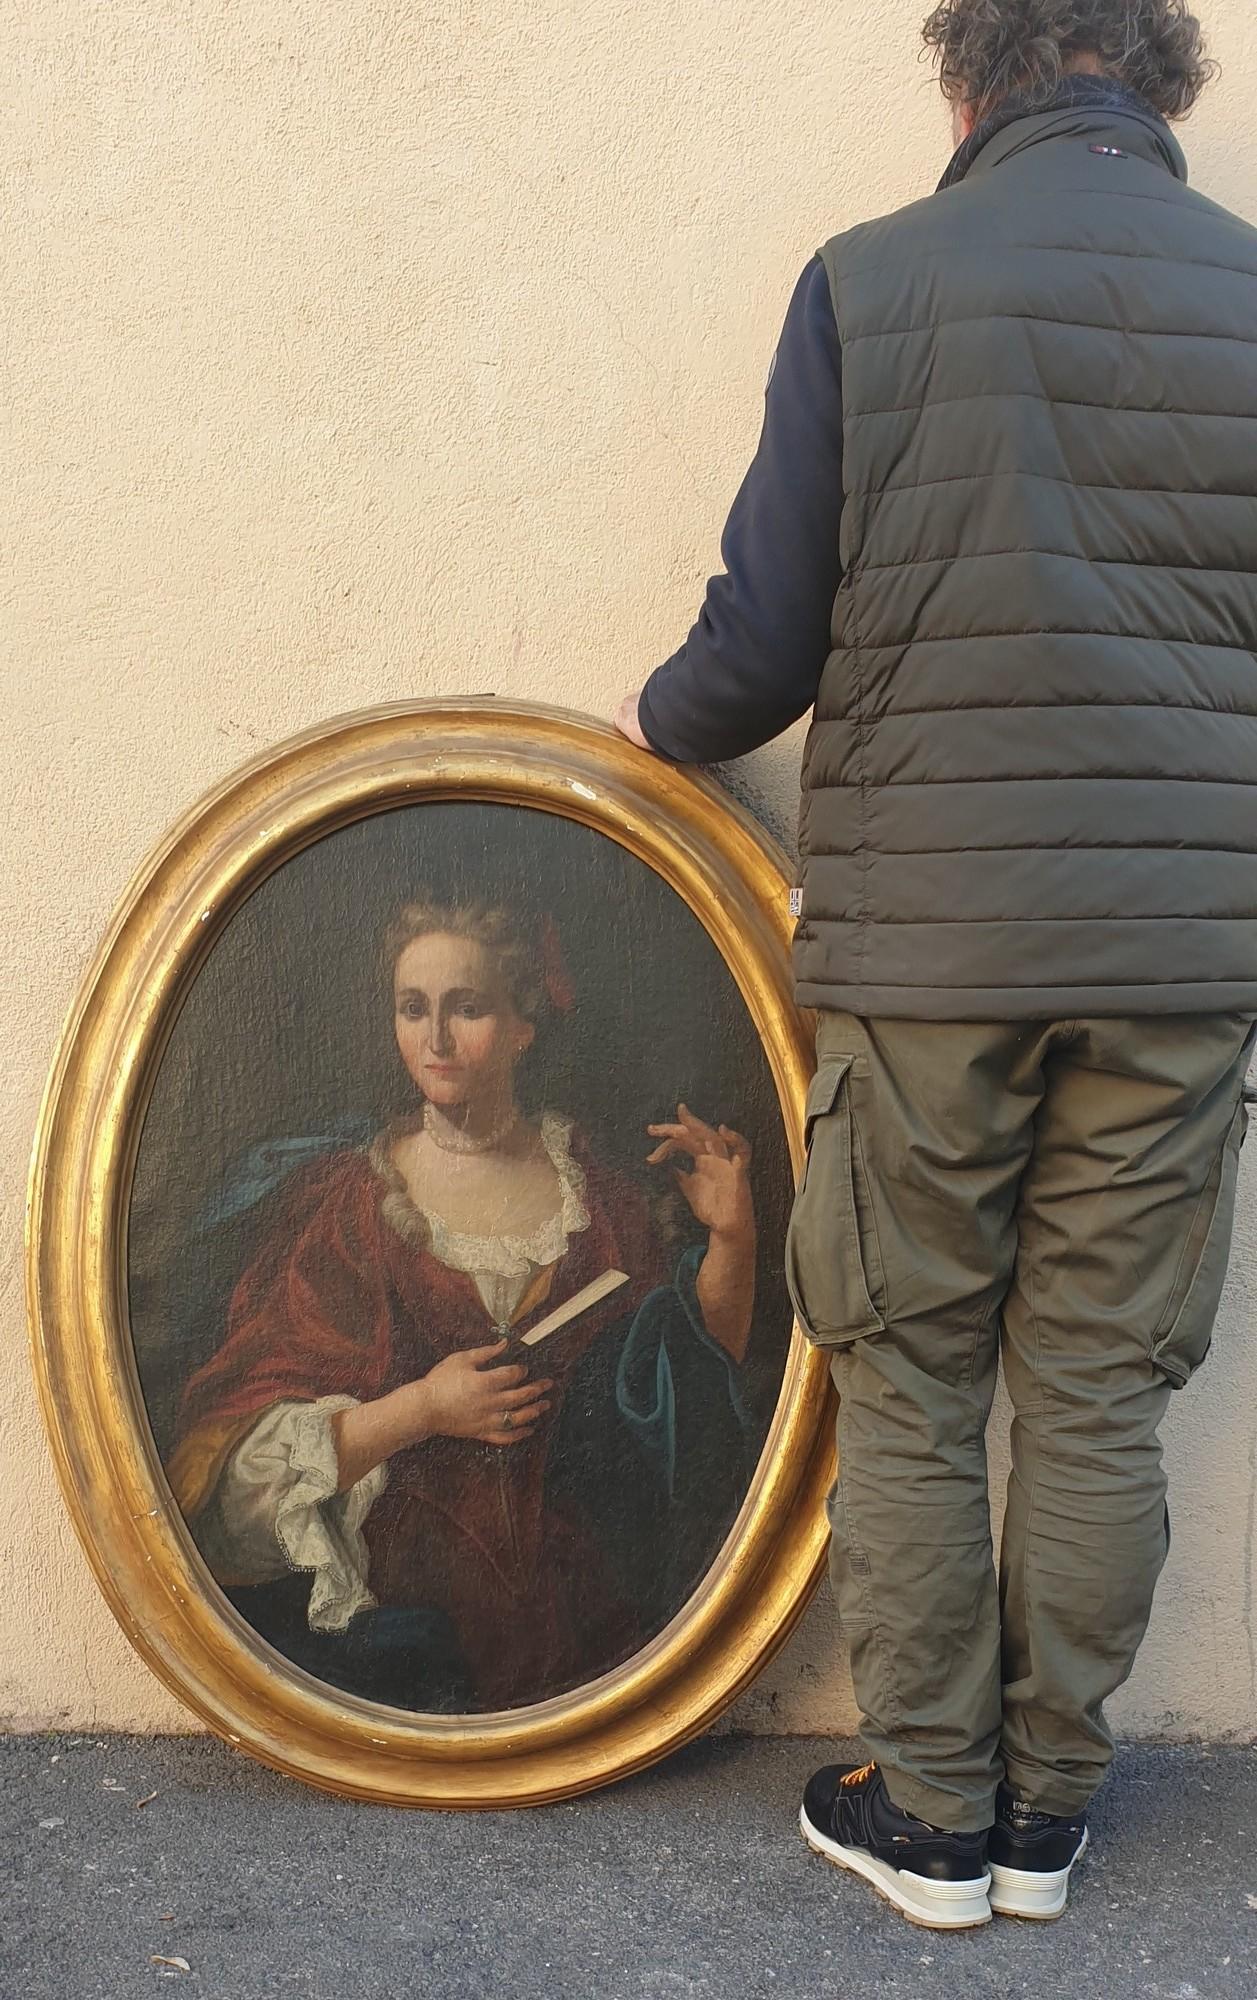 Ovales Porträt einer Dame von Rang, die reichen Schmuck und reiche Kleidung trägt, einen Fächer in der Hand

Guter Zustand, alte Restaurierungen, unterfüttert, einige Gebrauchsspuren am Rahmen

18. Jahrhundert

Abmessungen mit Rahmen: